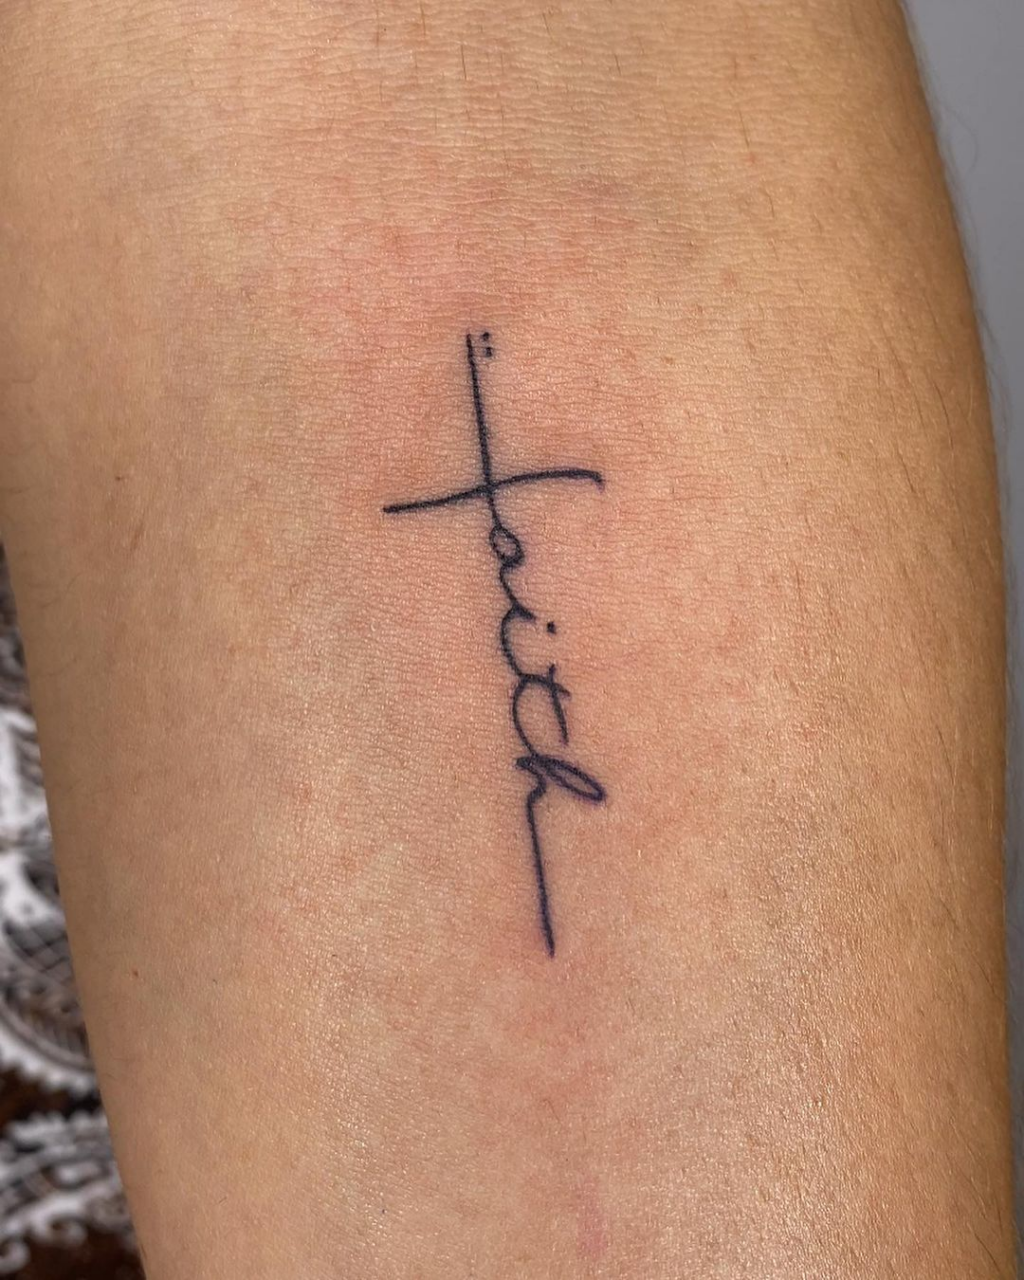 What does faith tattoo mean